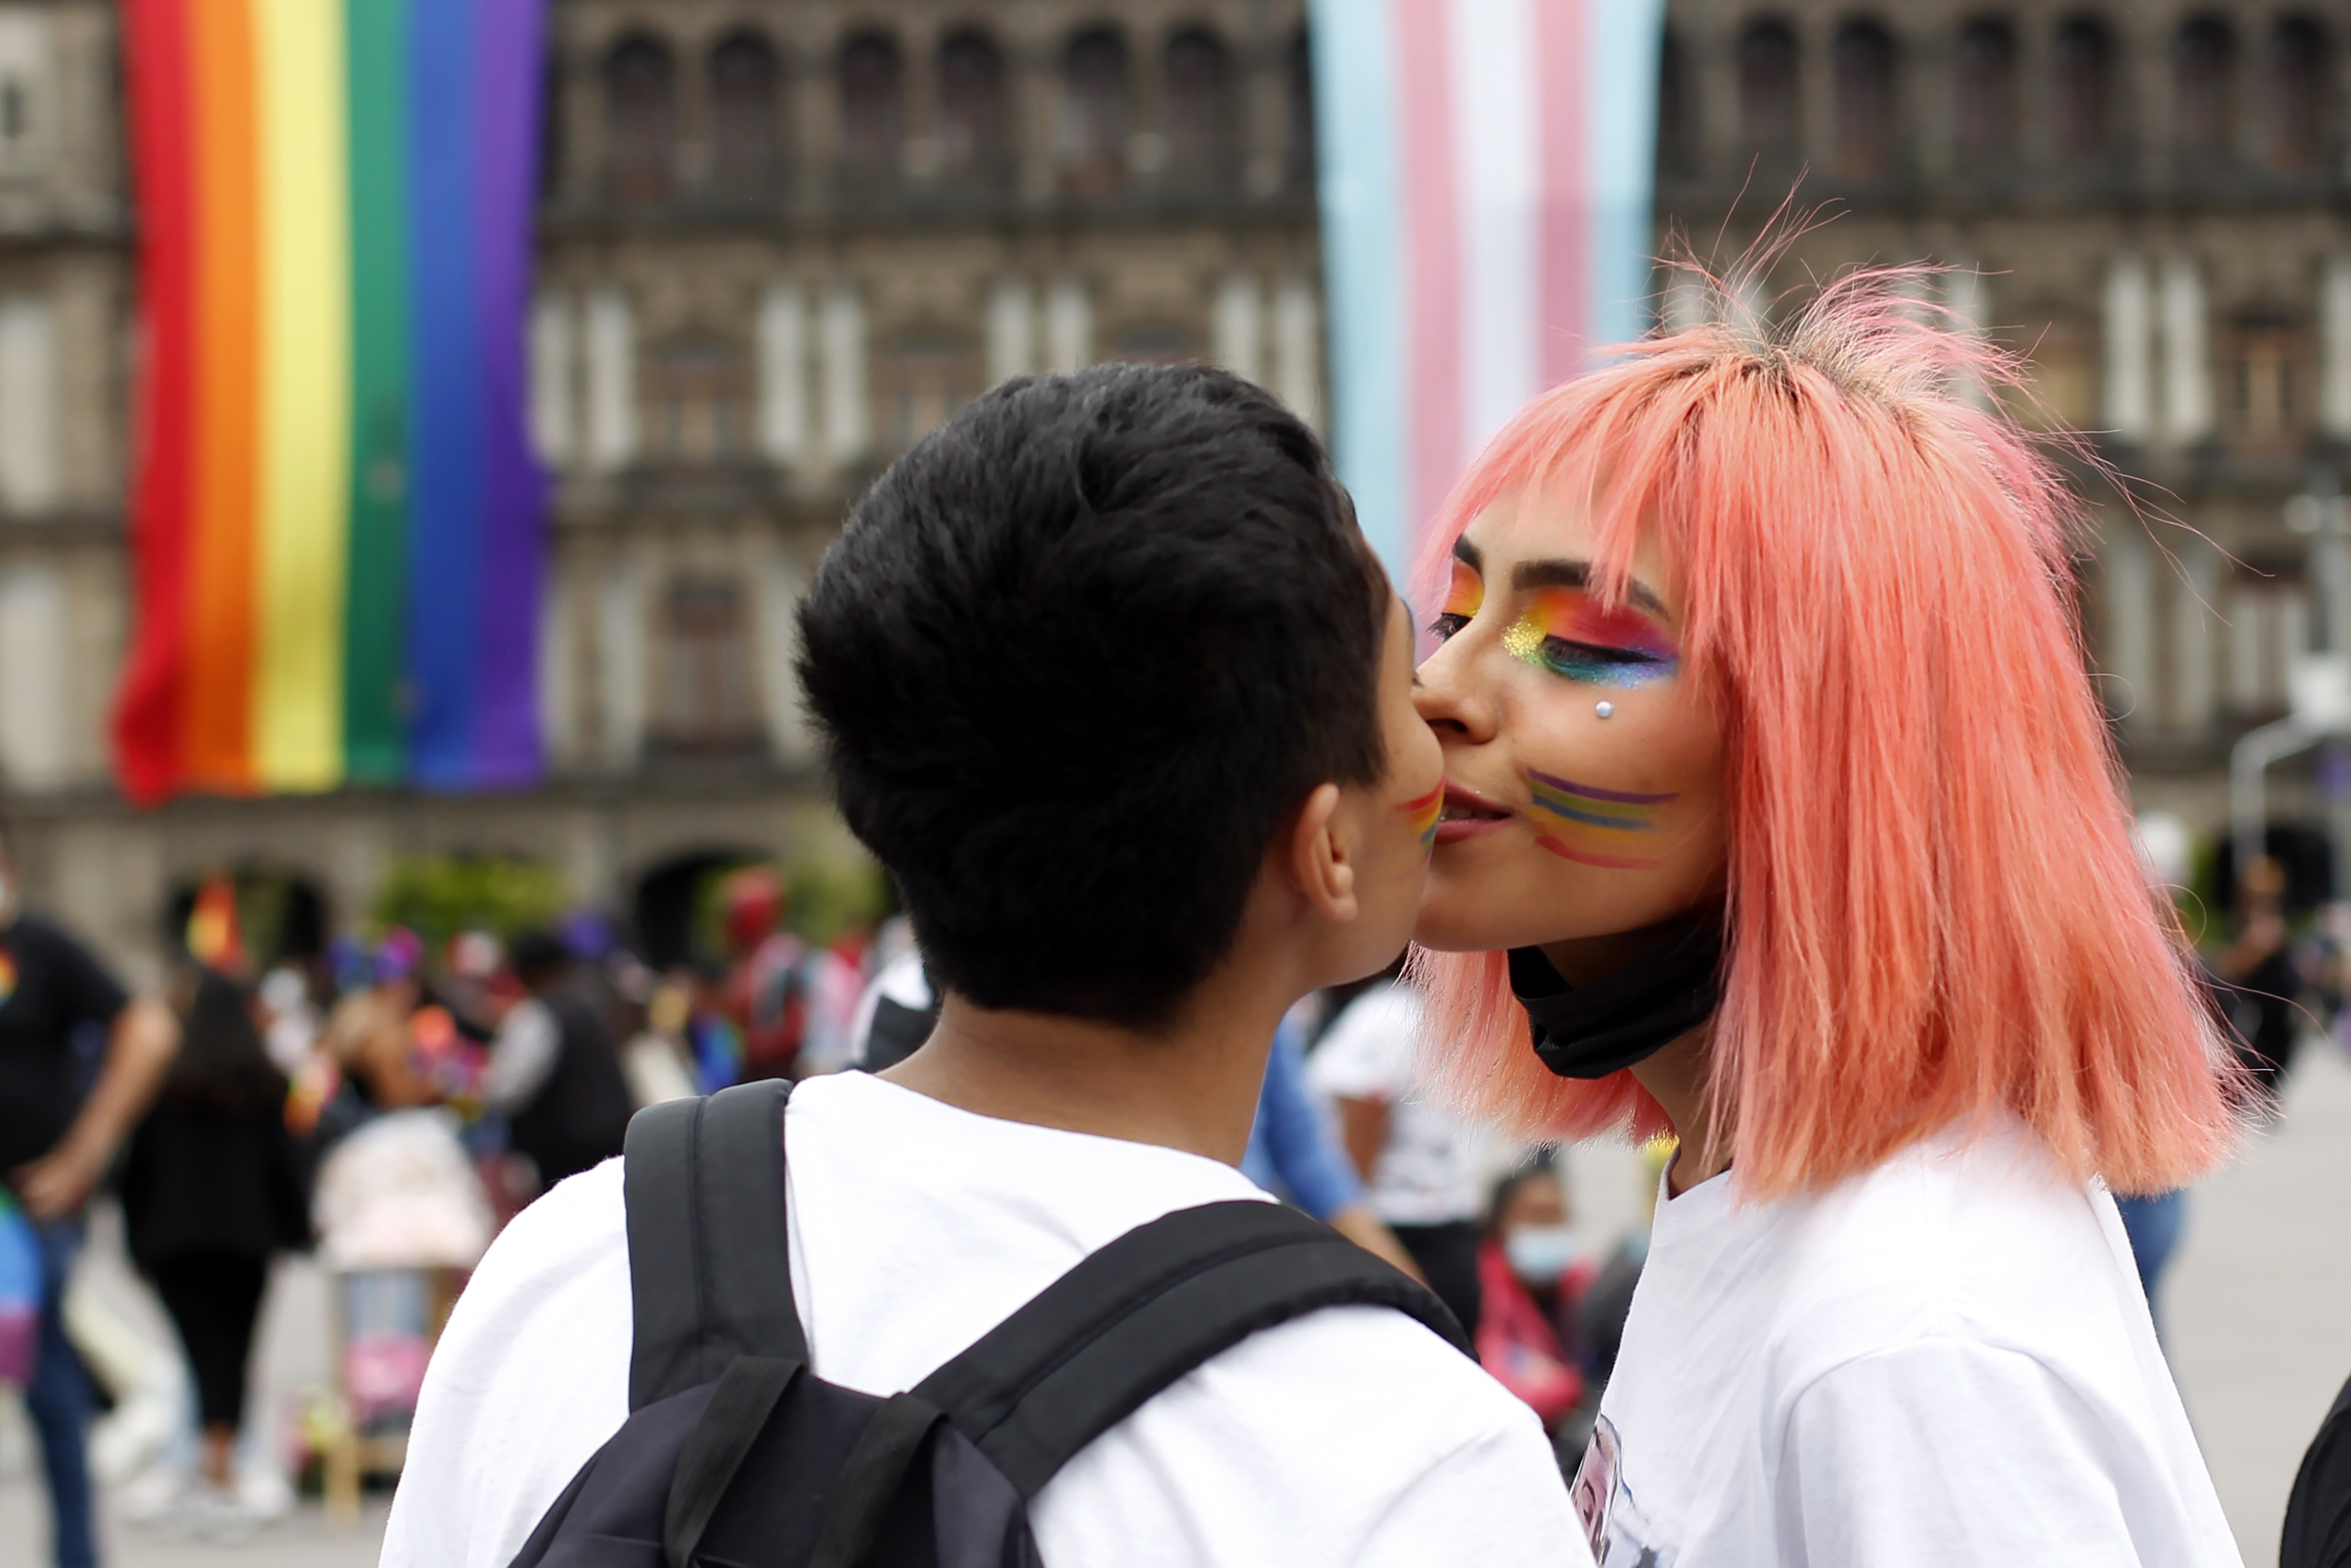 Dos jóvenes se besan luego al llegar al Zócalo capitalino (Foto: Karina Herández / Infobae)